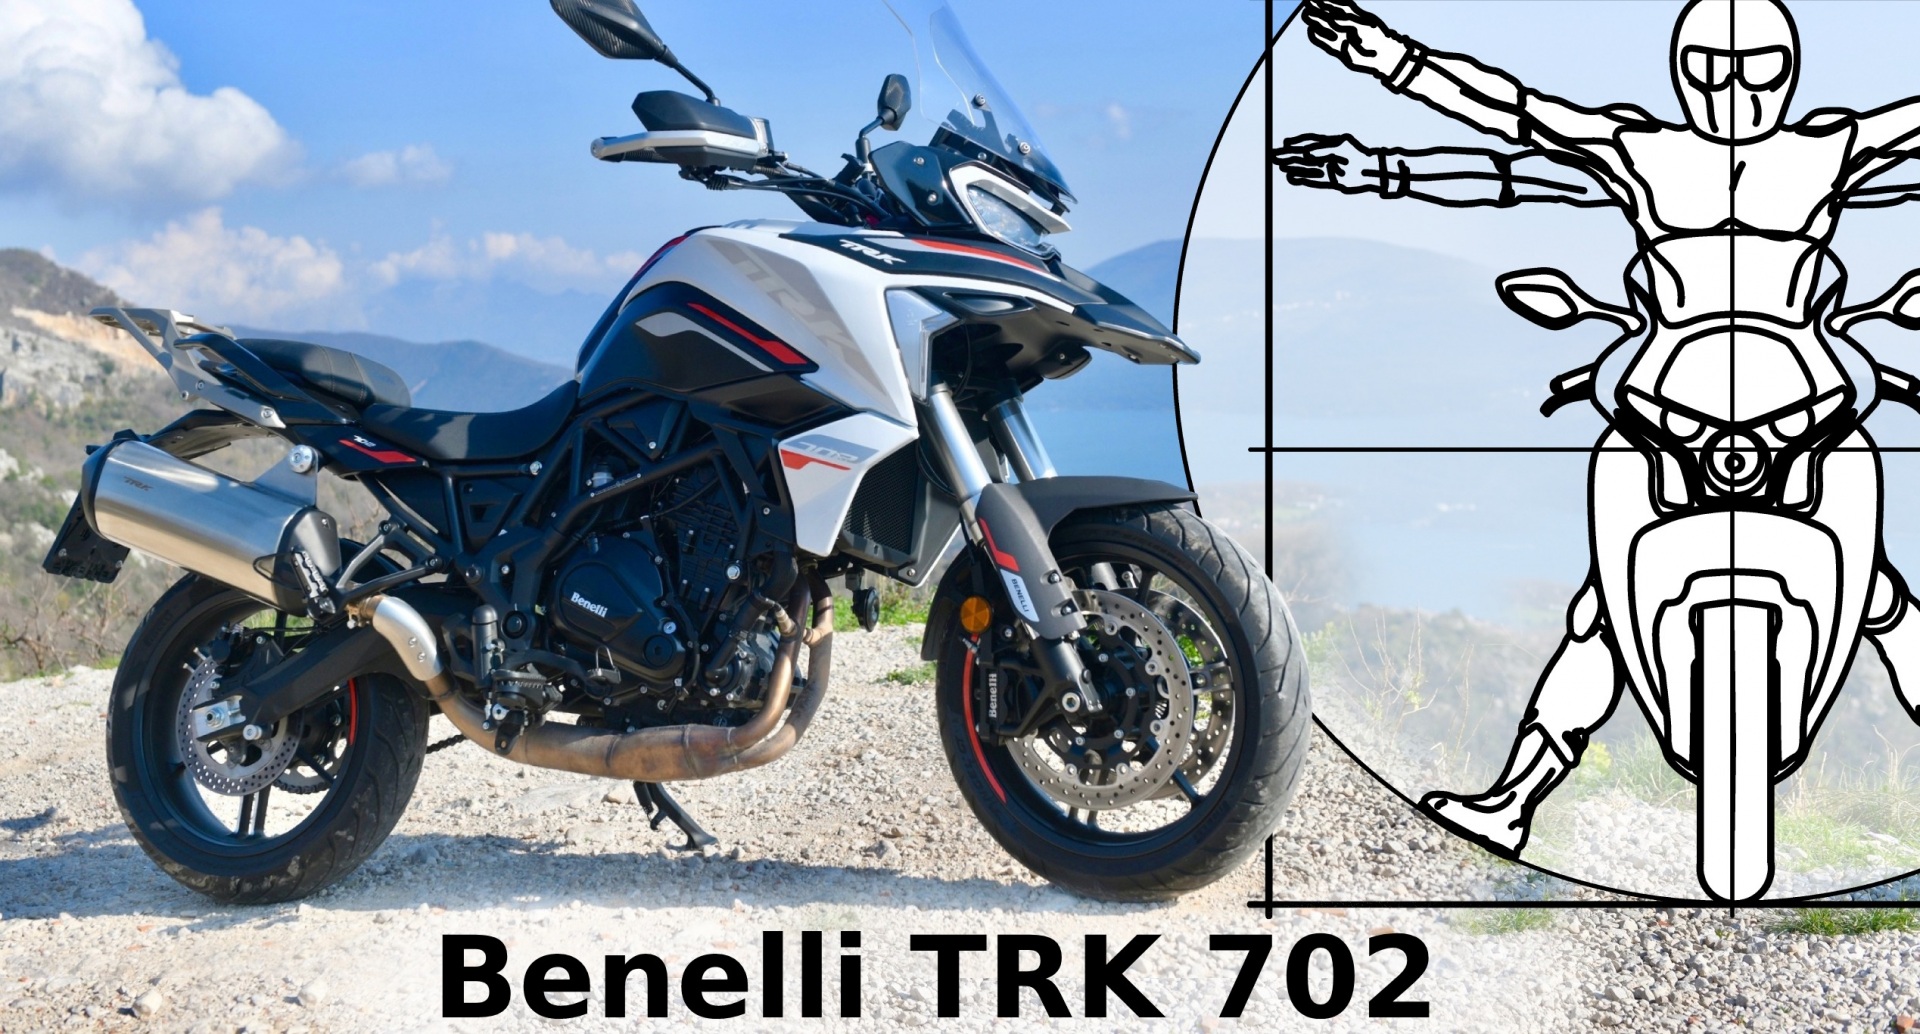 Benelli TRK 702: Мотоцикл, с которого не хочется слезать в обзоре Федотова, Обзоры мотоциклов, Мото56